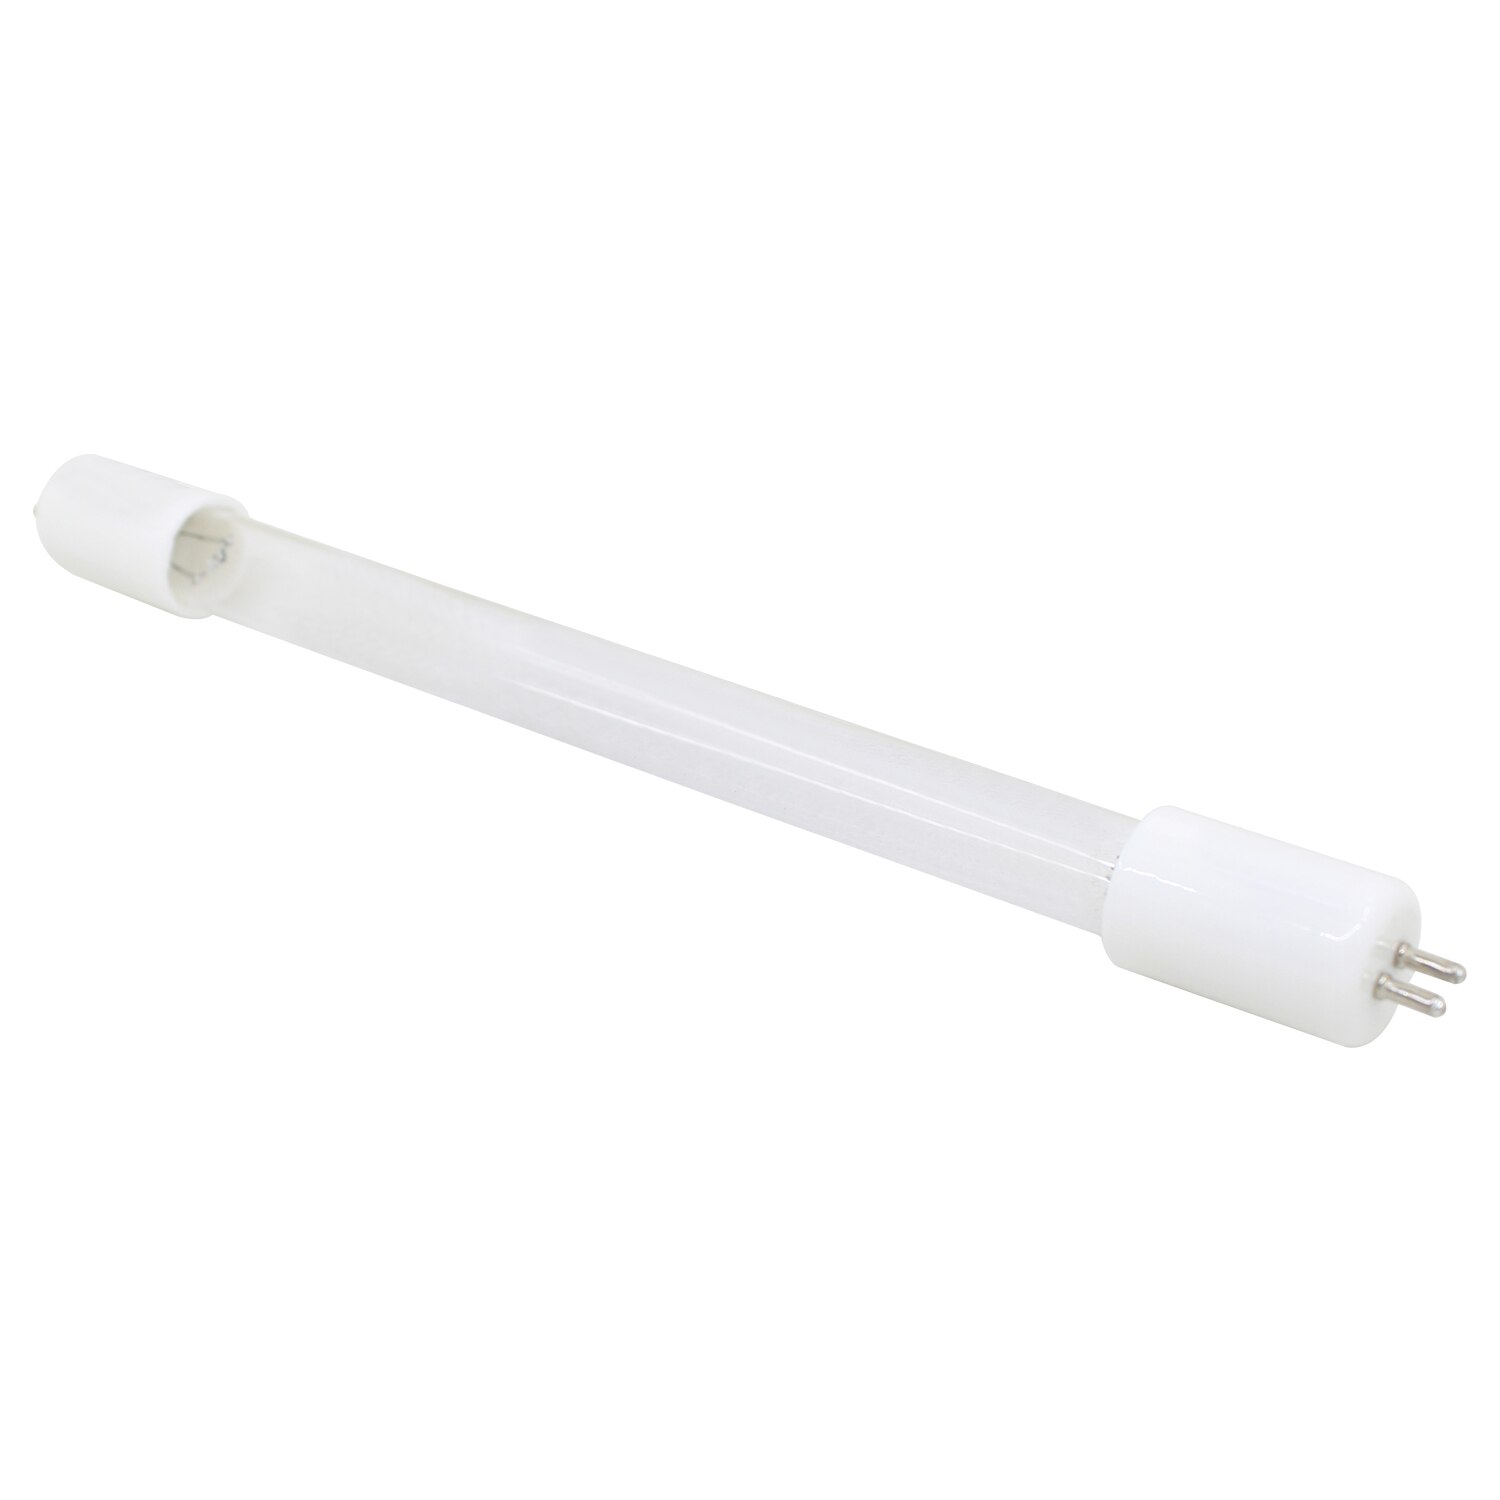 UV 조명 소독 램프 1 개, 가정용 오존 uv 램프 살균 램프, 상업용 석영 튜브 UV 램프 교체